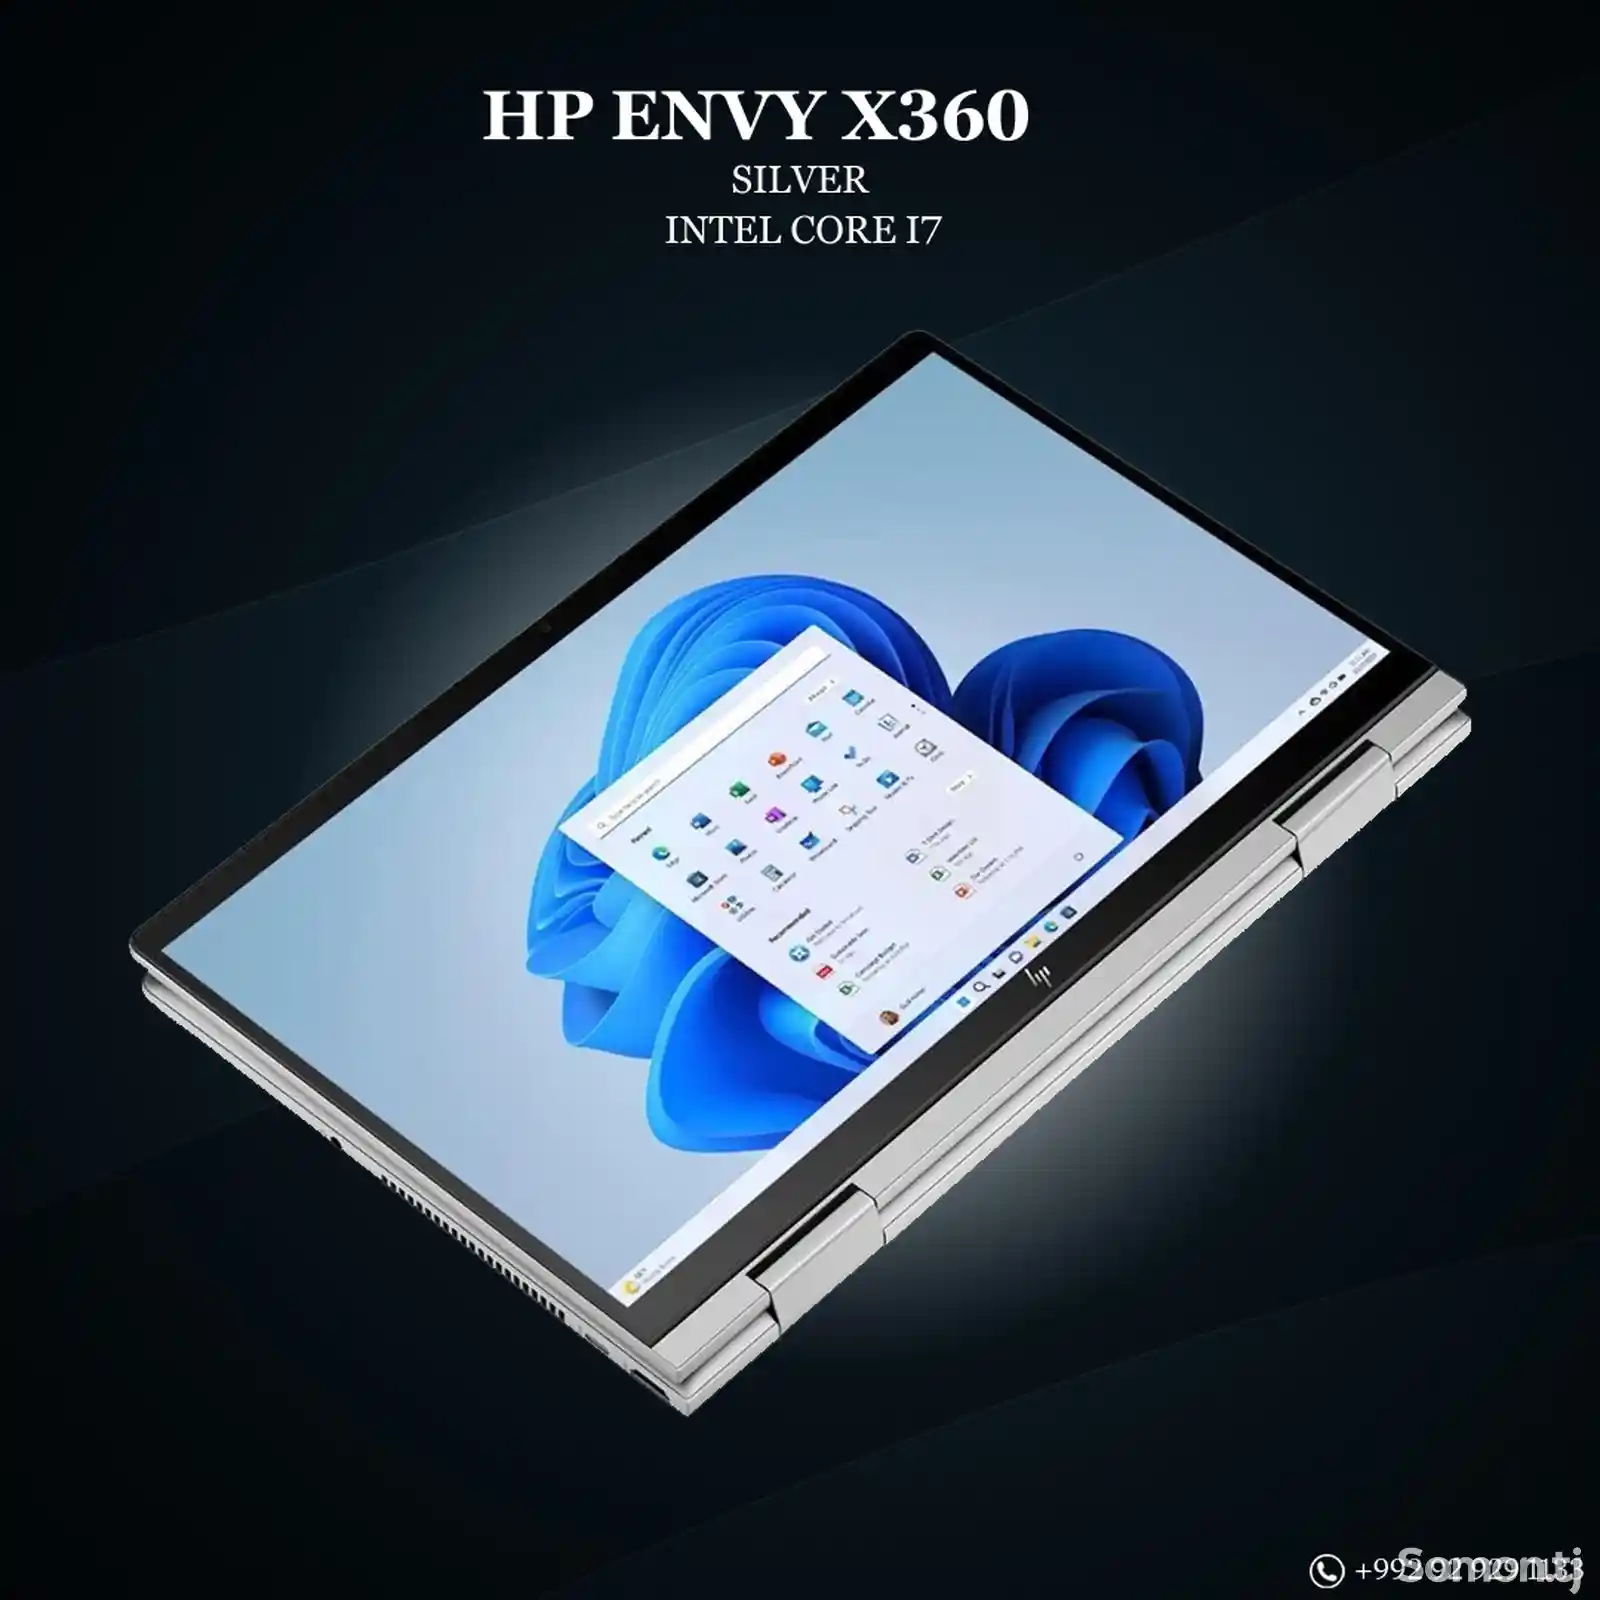 Ноутбук HP Envy x360 i7-3